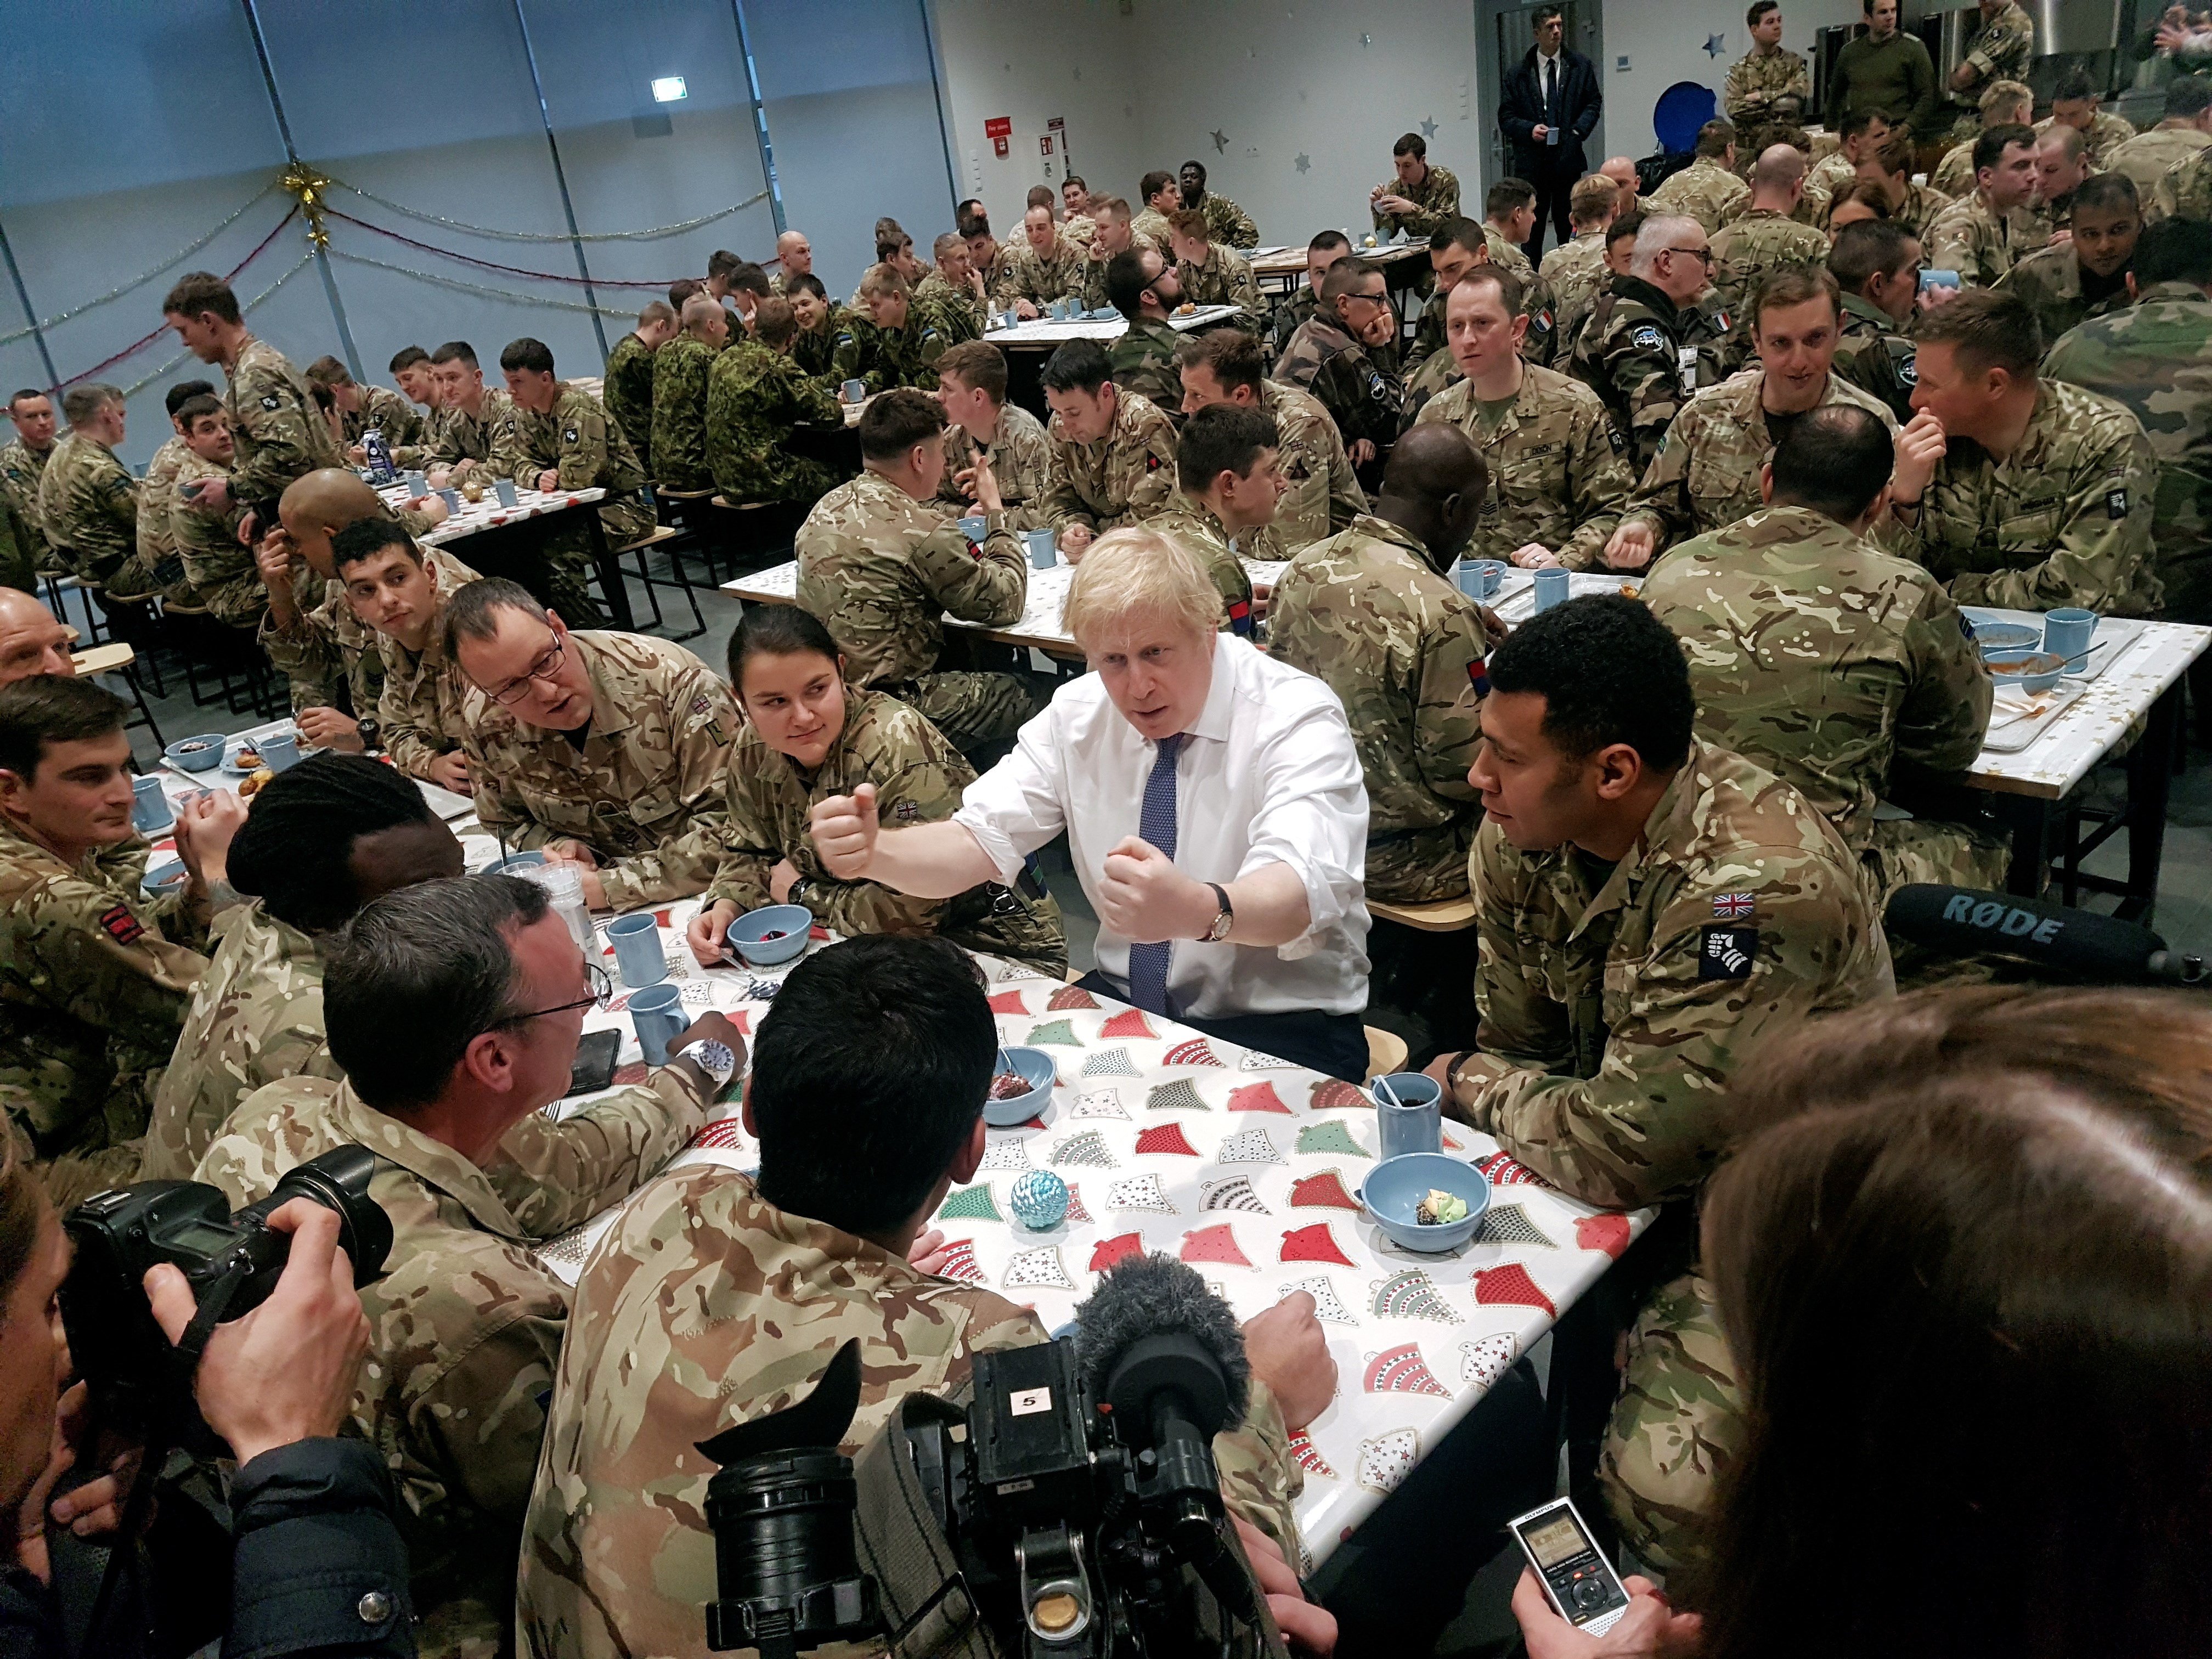 Boris Johnson busca feina: vol ser el nou secretari general de l'OTAN, segons 'The Telegraph'